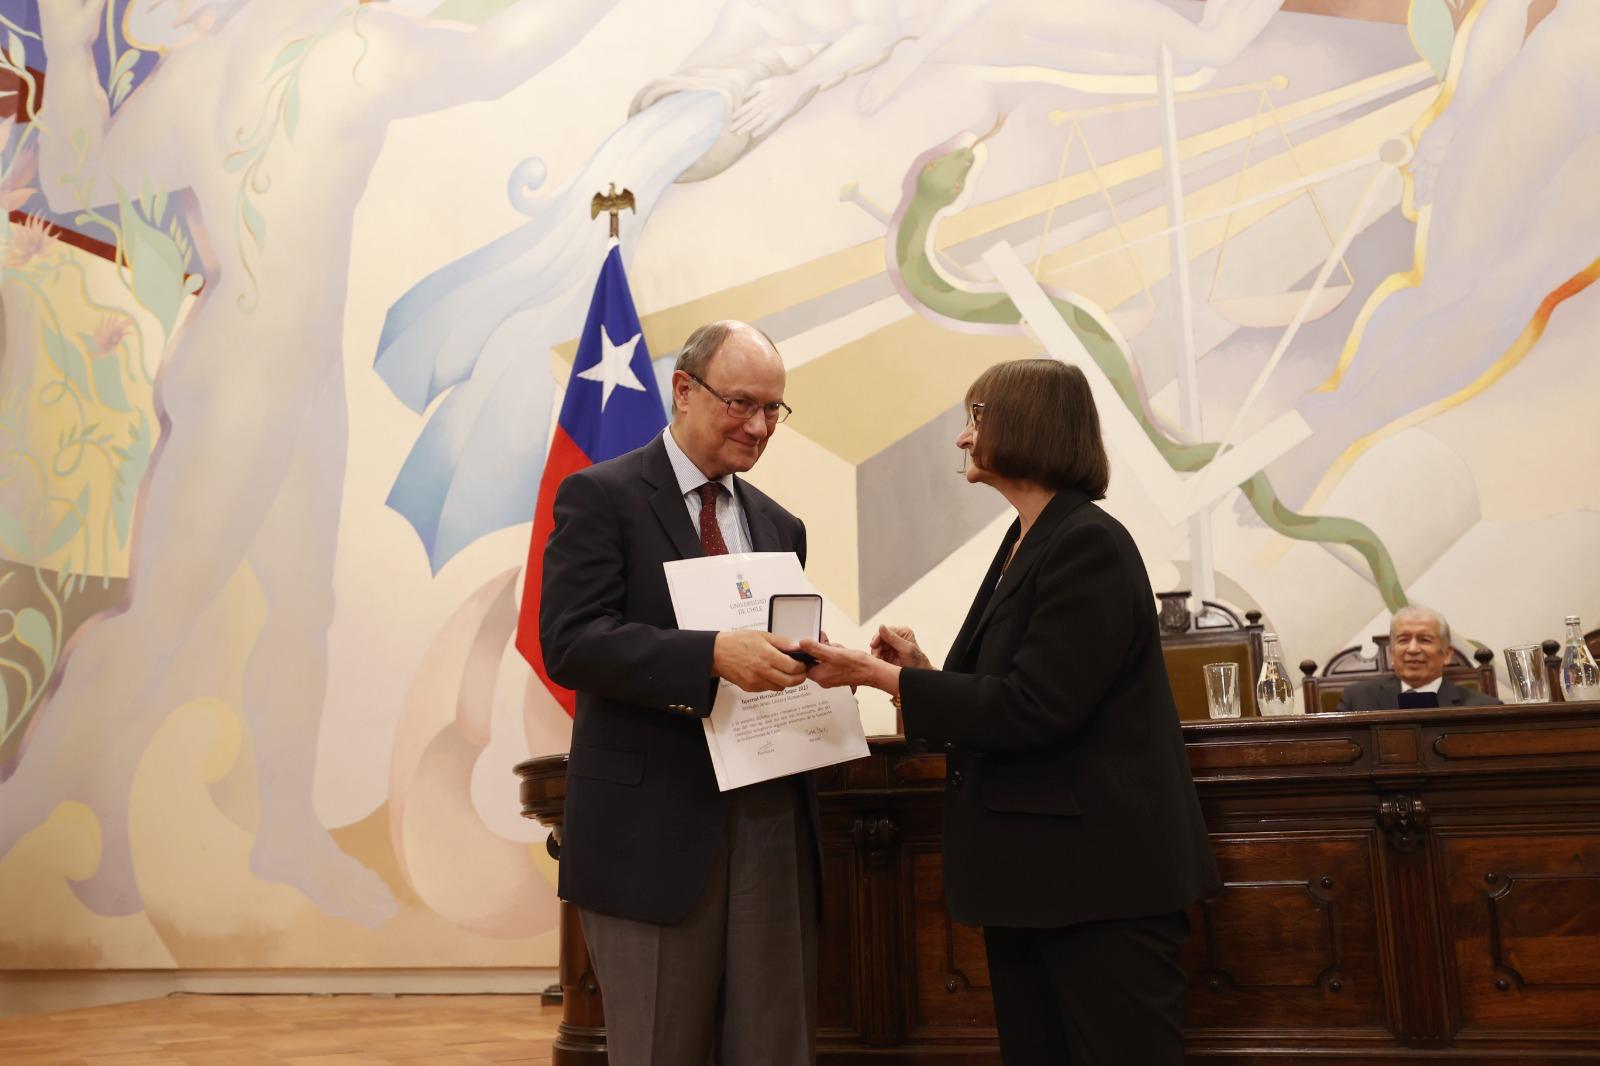 Dr. Enrique Barros Bourie (Consejero del CAM Santiago), recibe la Medalla Juvenal Hernández en la mención Artes, Letras y Humanidades en la Universidad de Chile